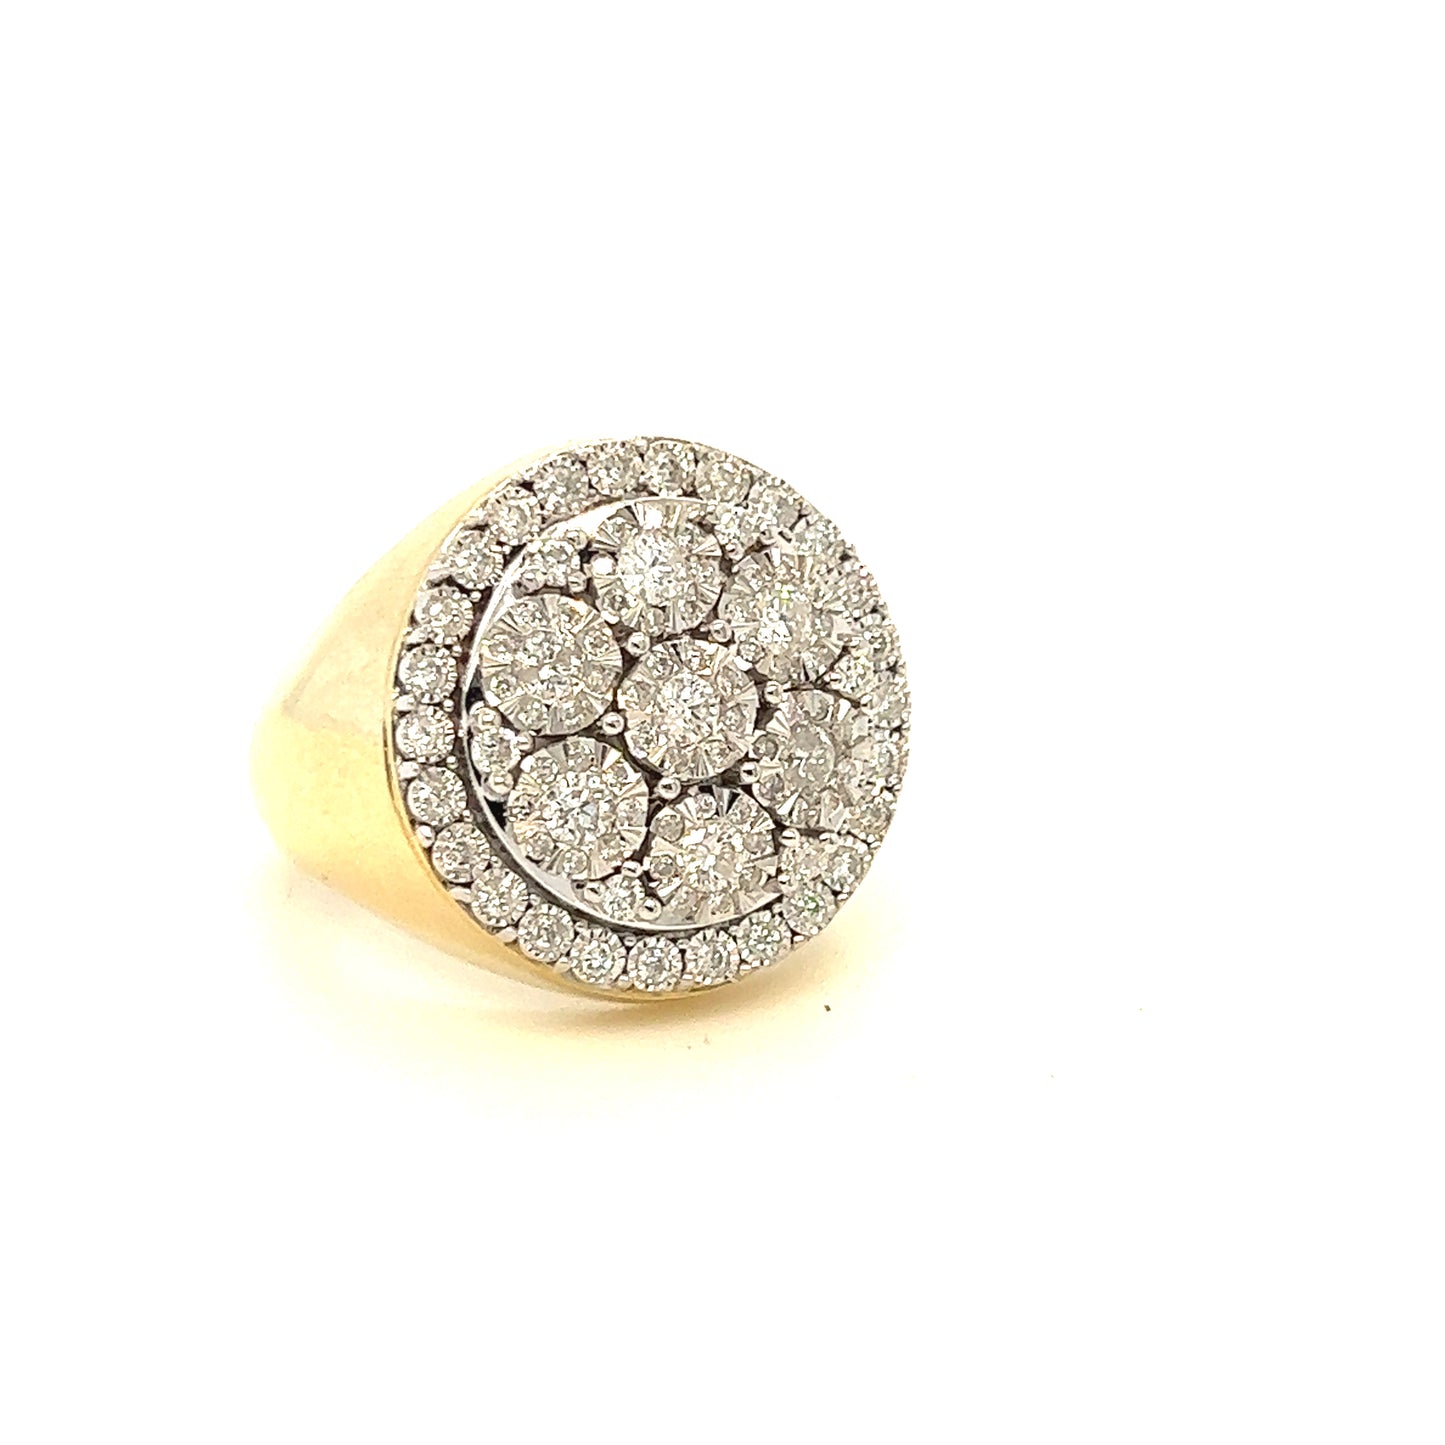 10K Flower Setting Diamond Ring